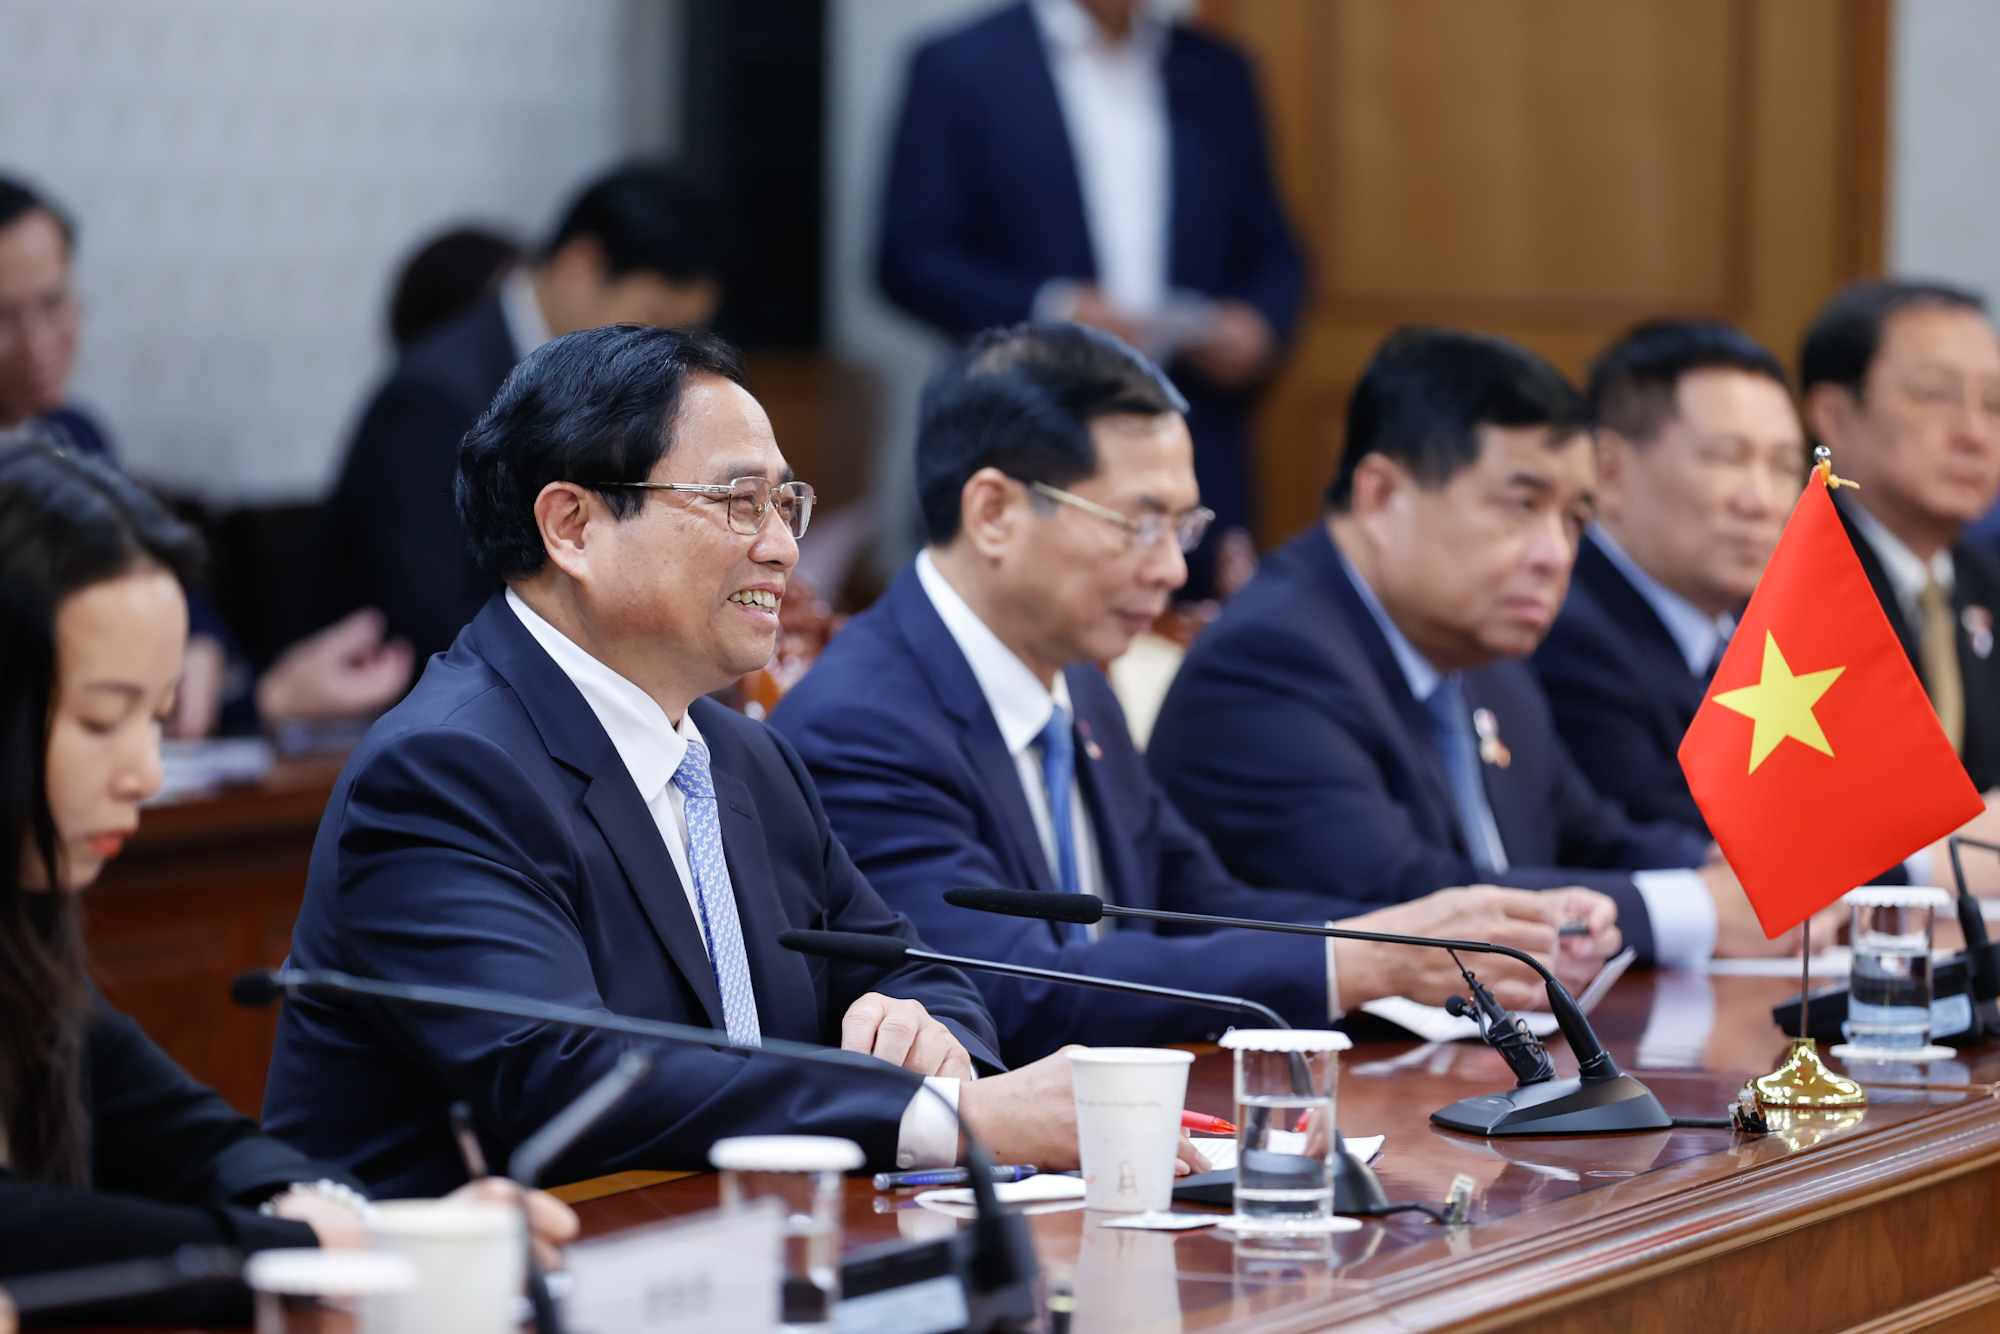 Thủ tướng Phạm Minh Chính bày tỏ vui mừng về những thành tựu phát triển vượt bậc làm nên ""Kỳ tích sông Hàn" của đất nước và Nhân dân Hàn Quốc - Ảnh: VGP/Nhật Bắc